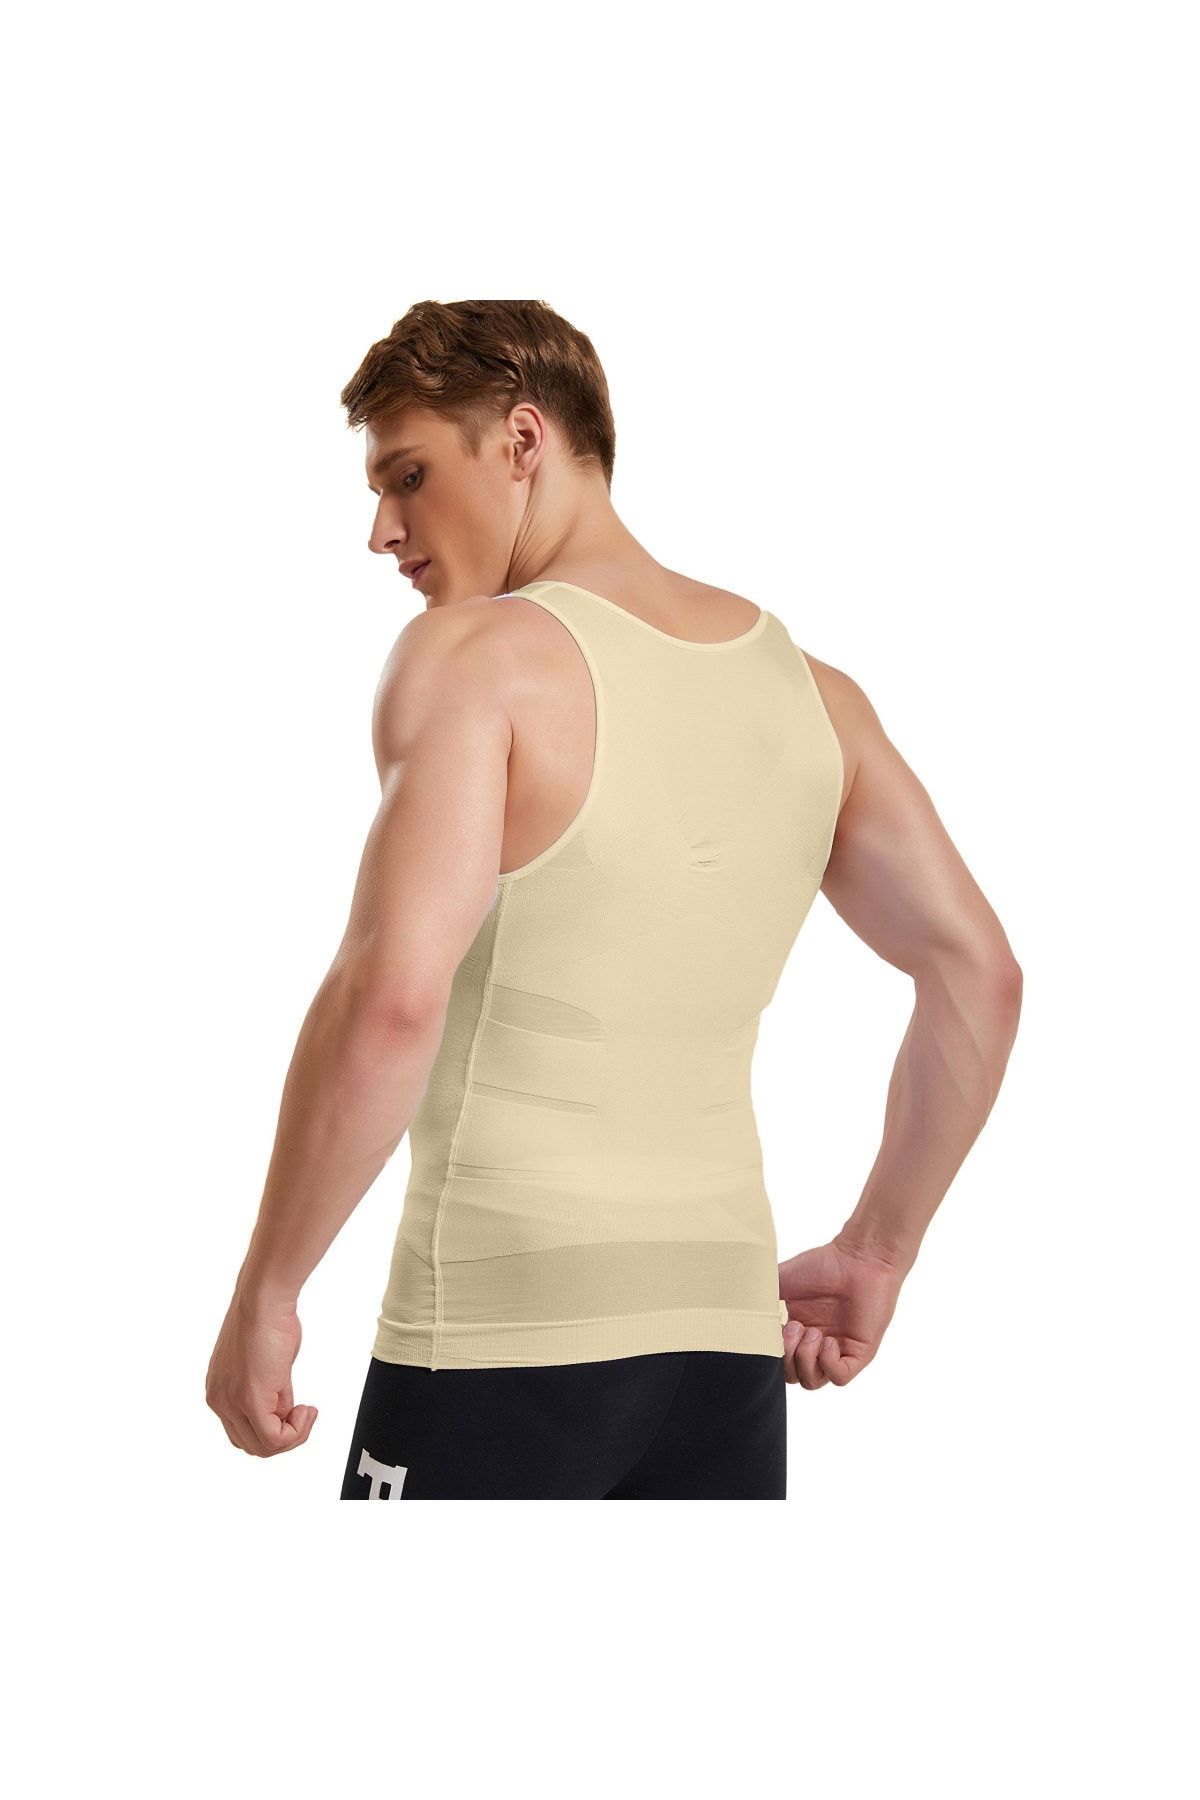 Mistirik Compression Shirts for Men - Mens Slimming Body Shaper